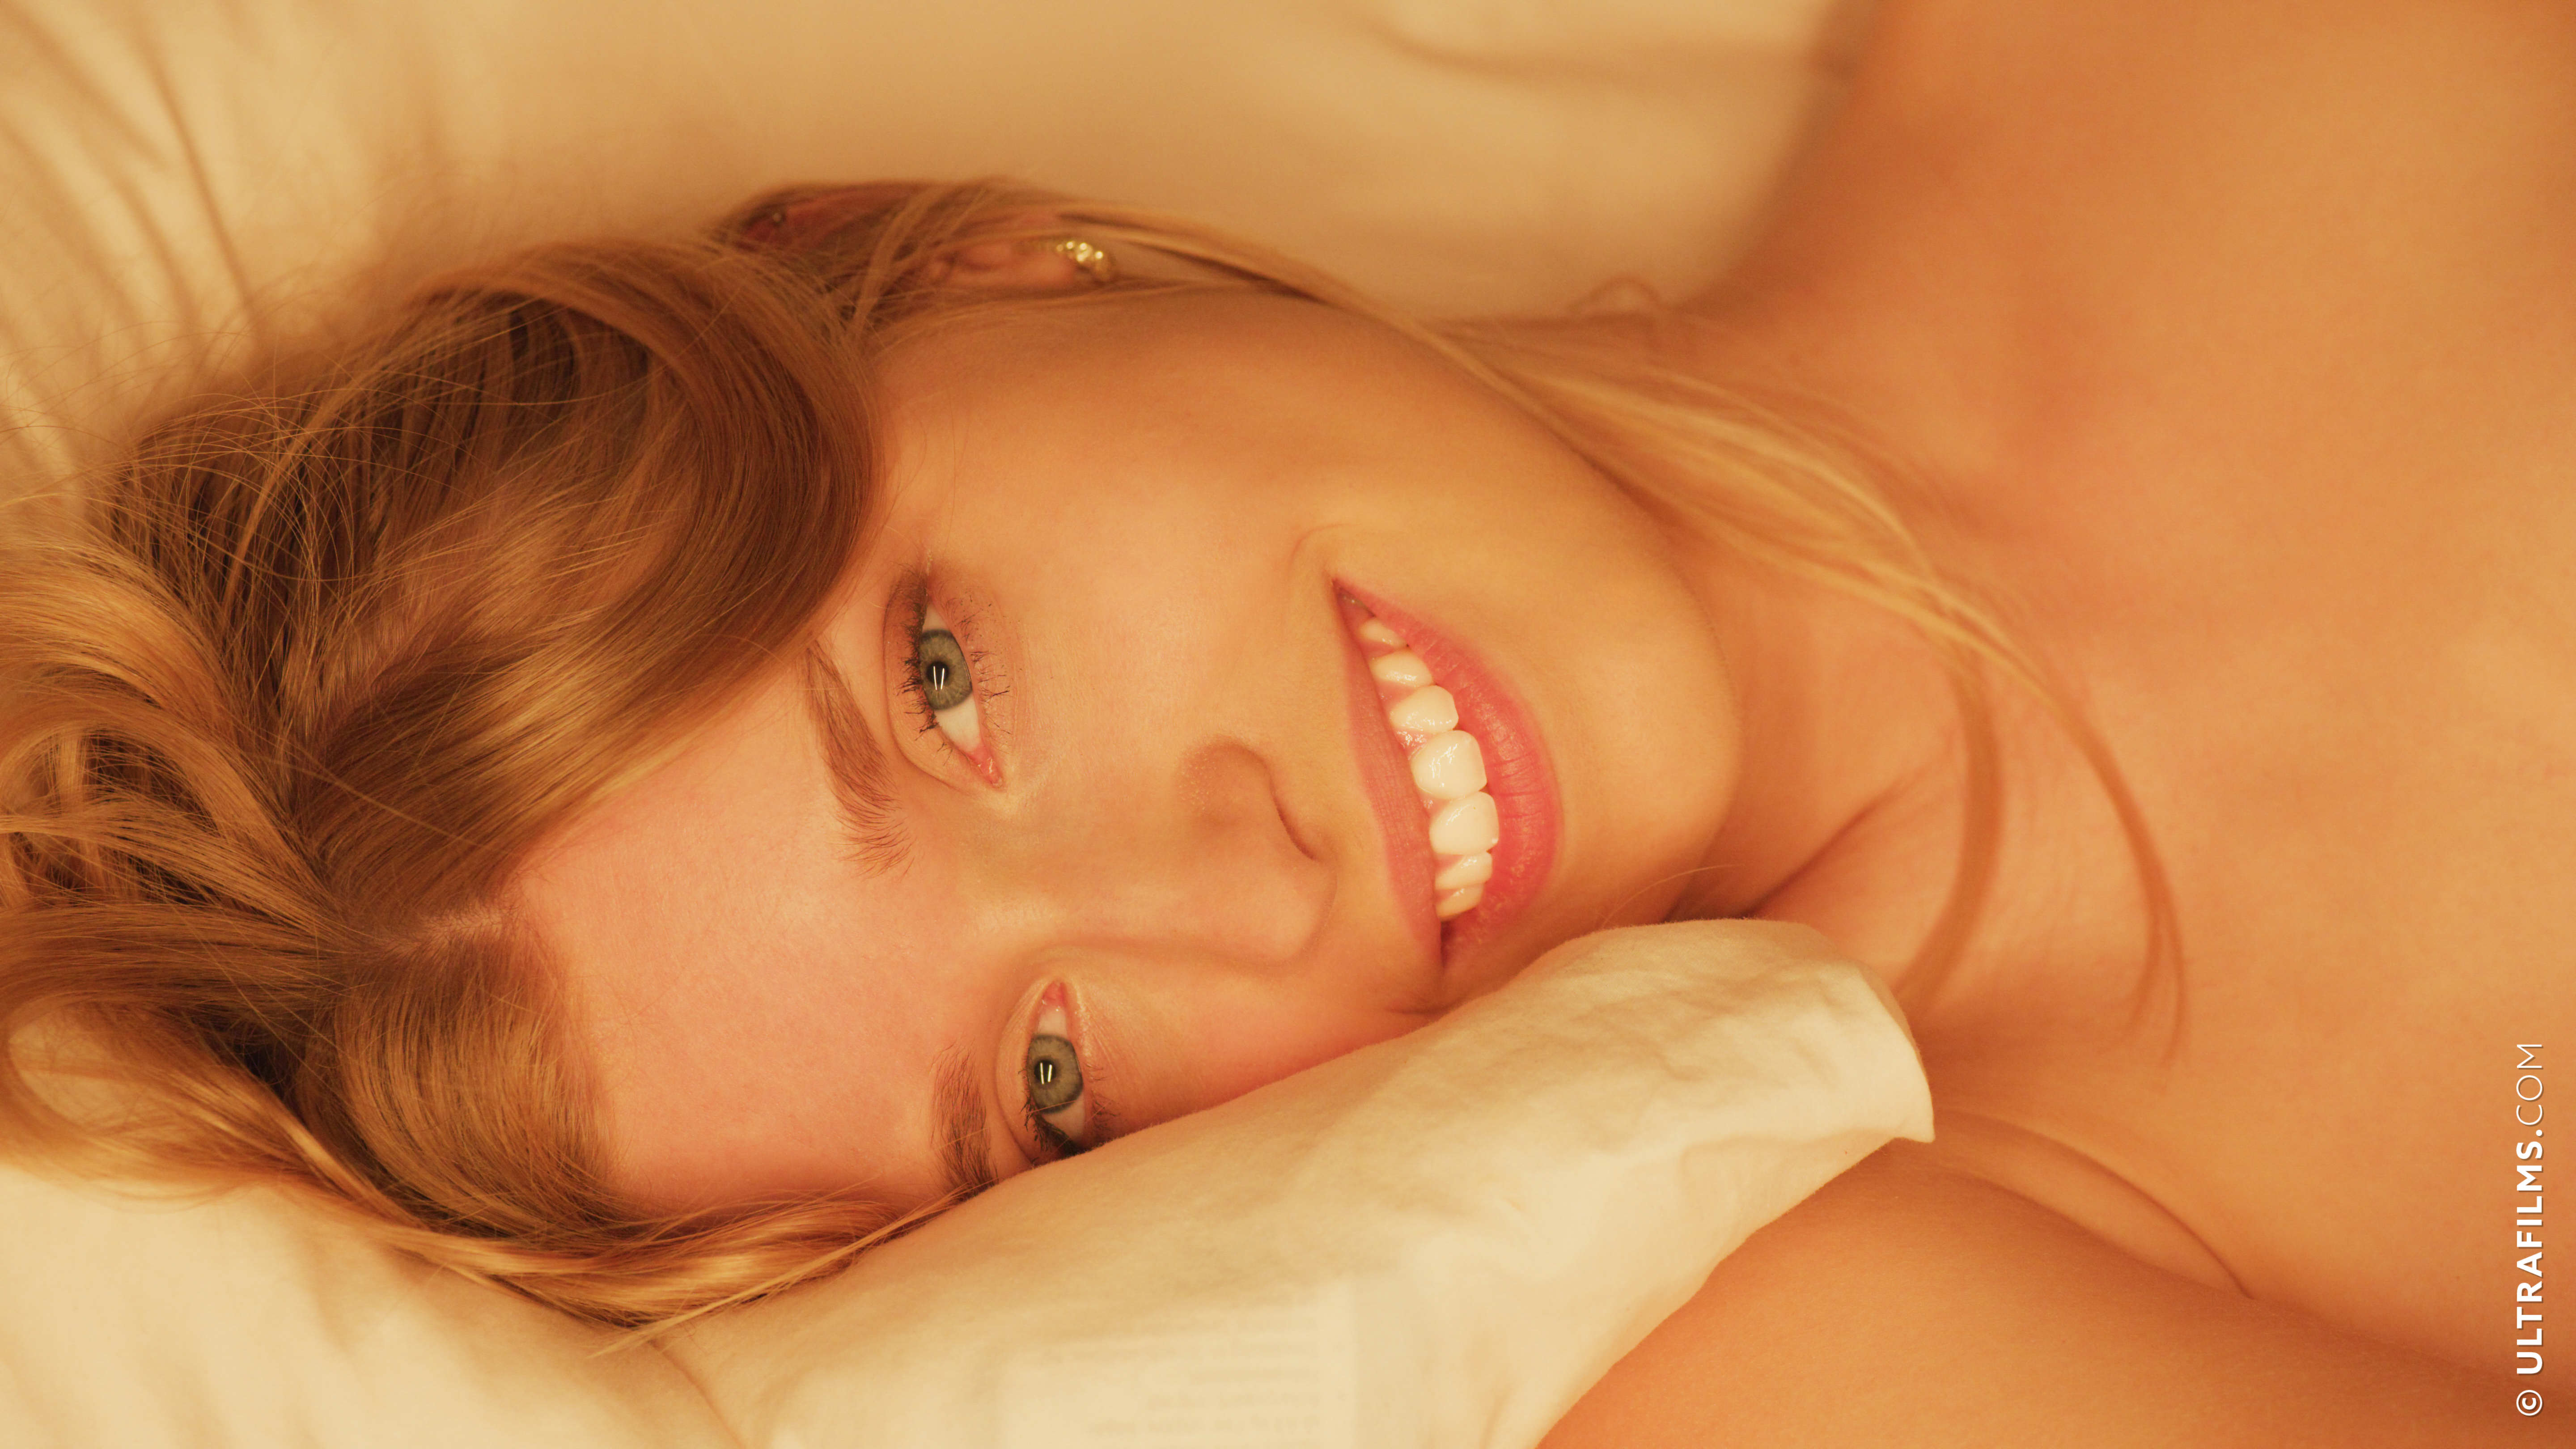 People 5760x3240 Freya Mayer UltraFilms women in bed blonde pornstar closeup watermarked